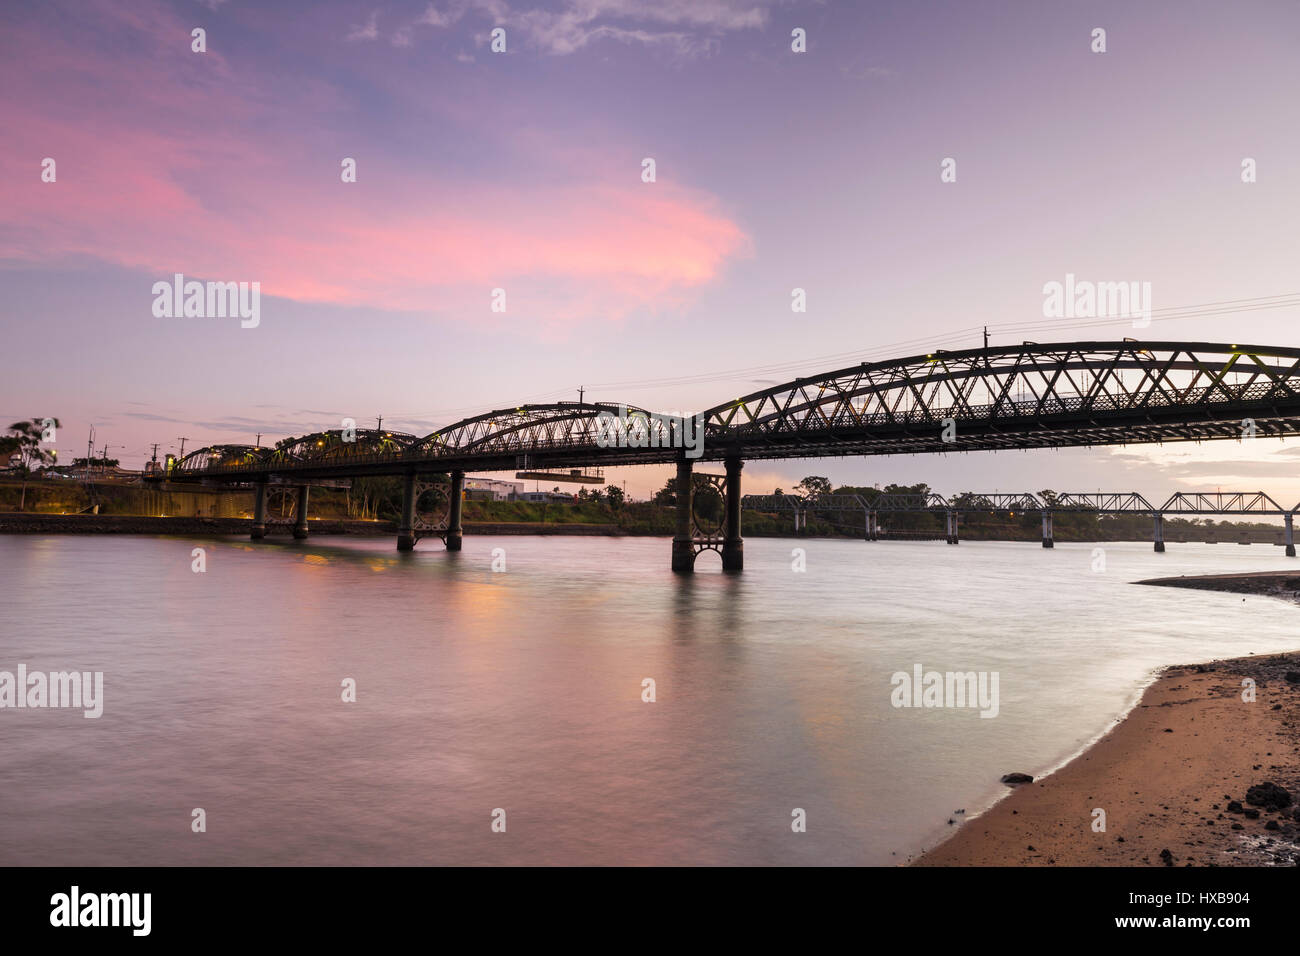 Le pont Burnett, classé au patrimoine mondial au crépuscule. Bundaberg, Queensland, Australie Banque D'Images